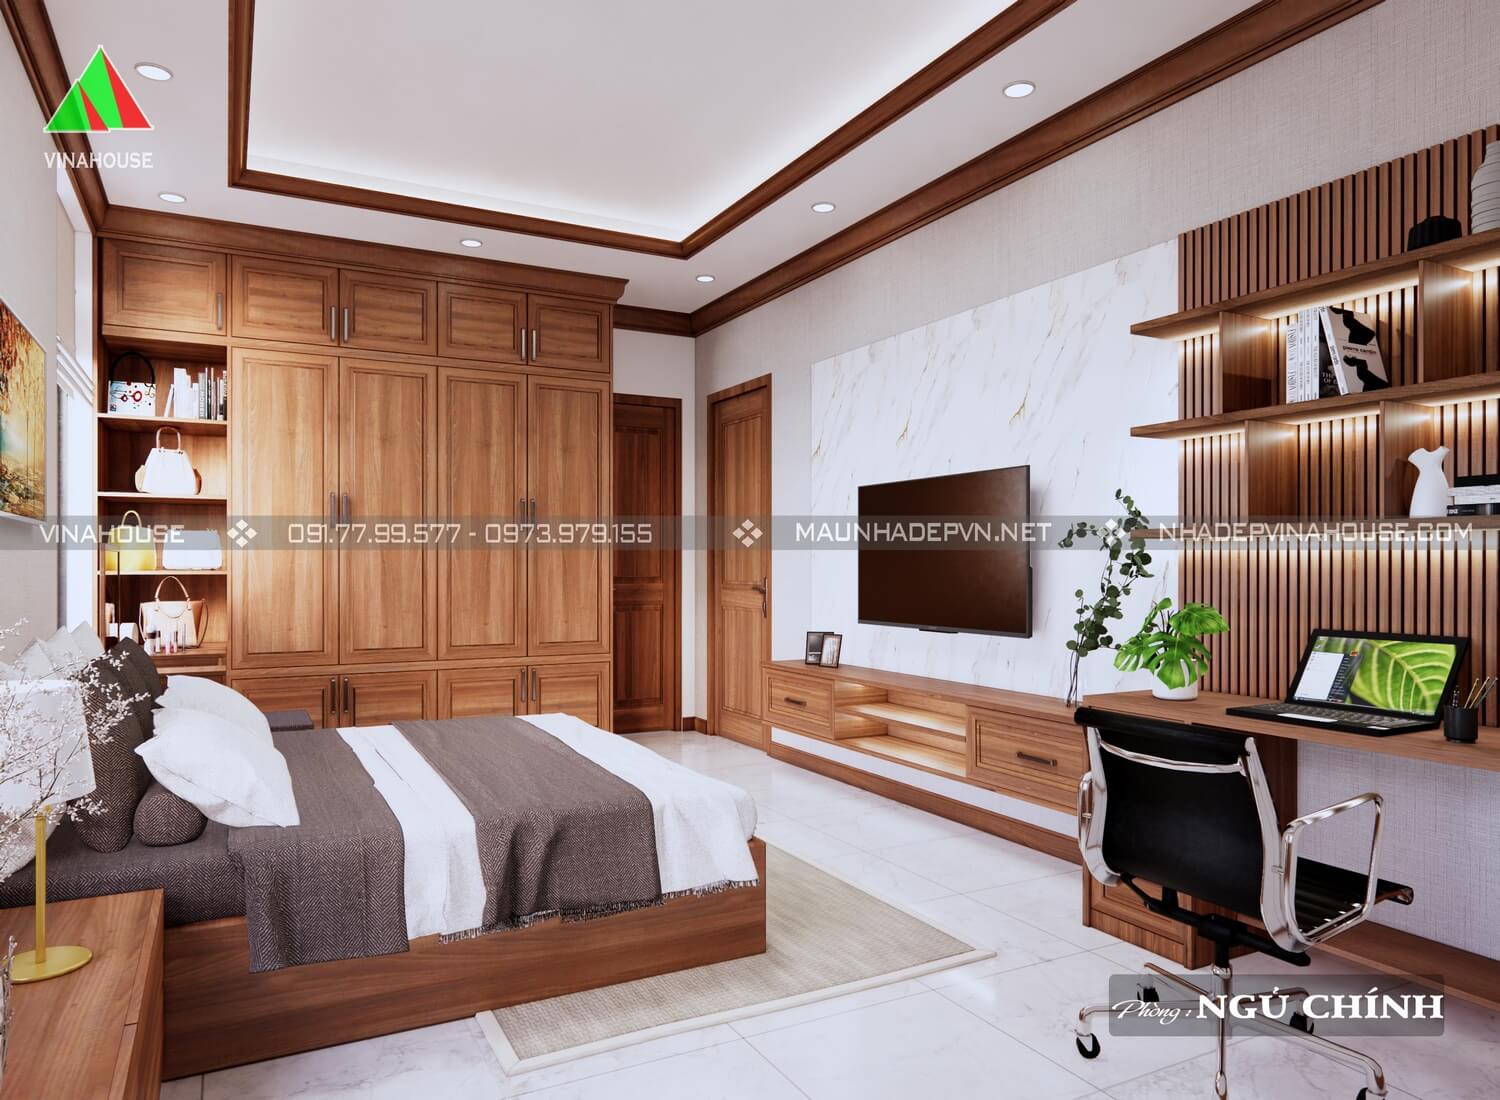 Mẫu thiết kế nhà cấp 4 mái thái 3 phòng ngủ hiện đại